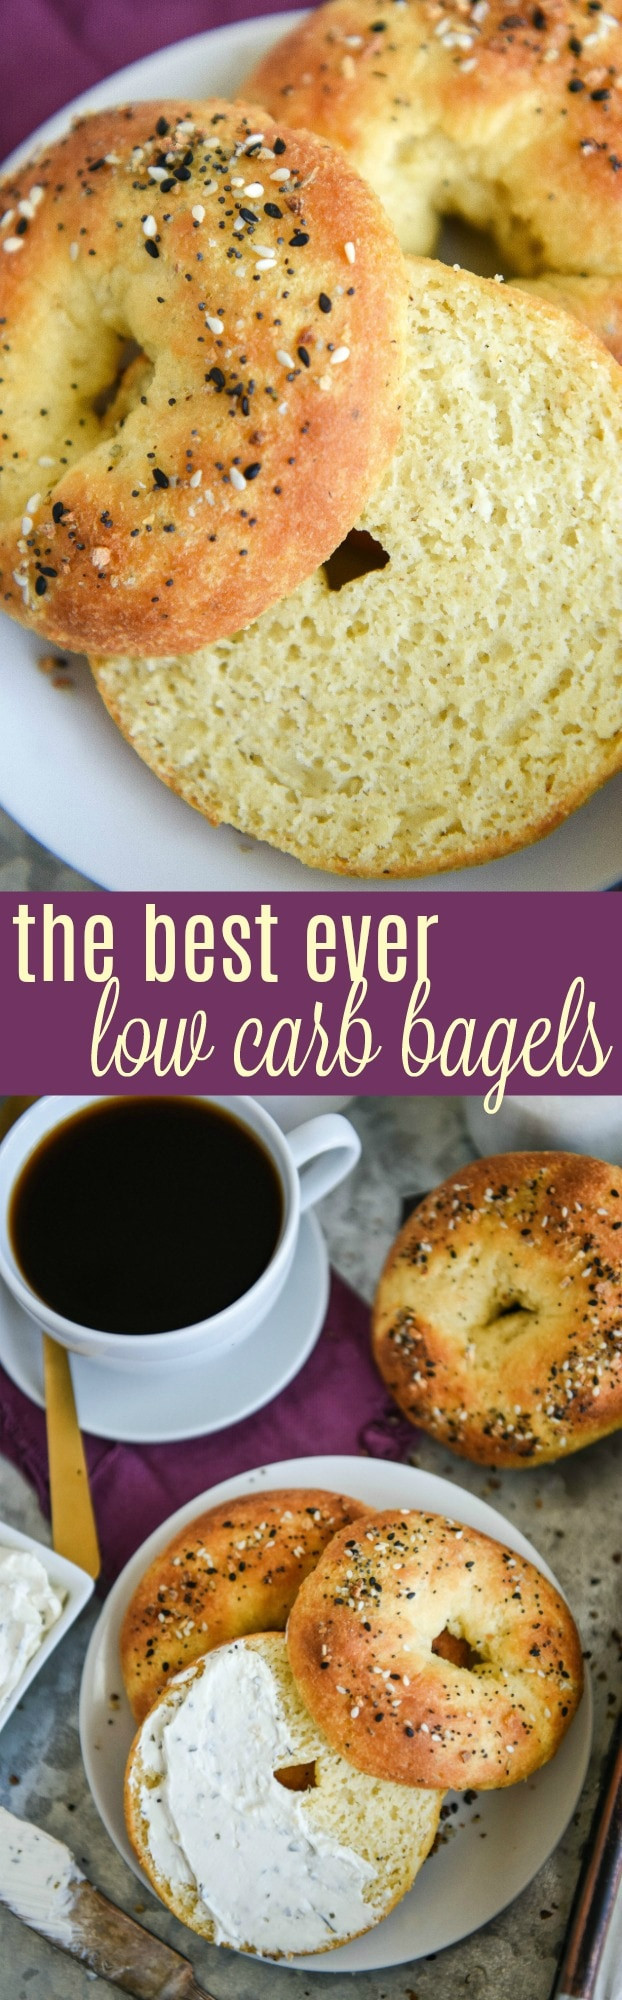 Best Low Carb Bagels
 The Best Low Carb Bagels